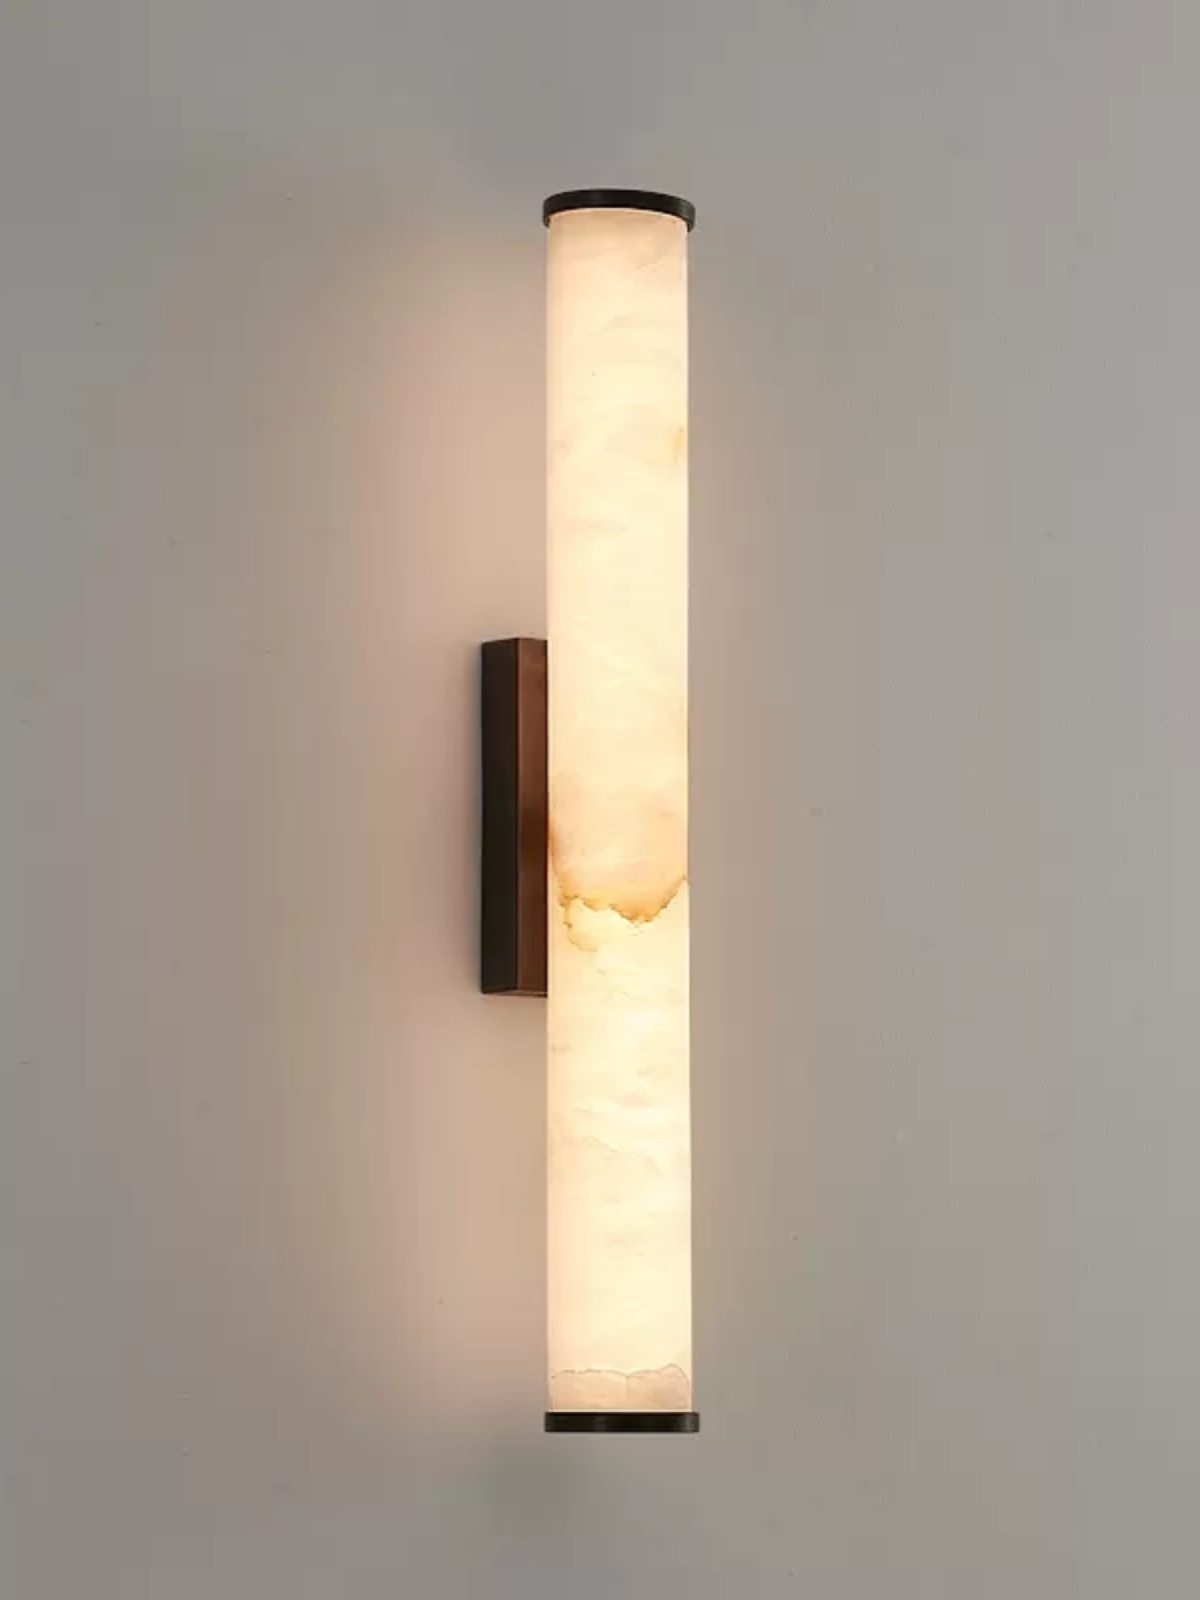 簡約現代西班牙雲石壁燈 客廳臥室床頭高檔全銅壁燈 (5.9折)